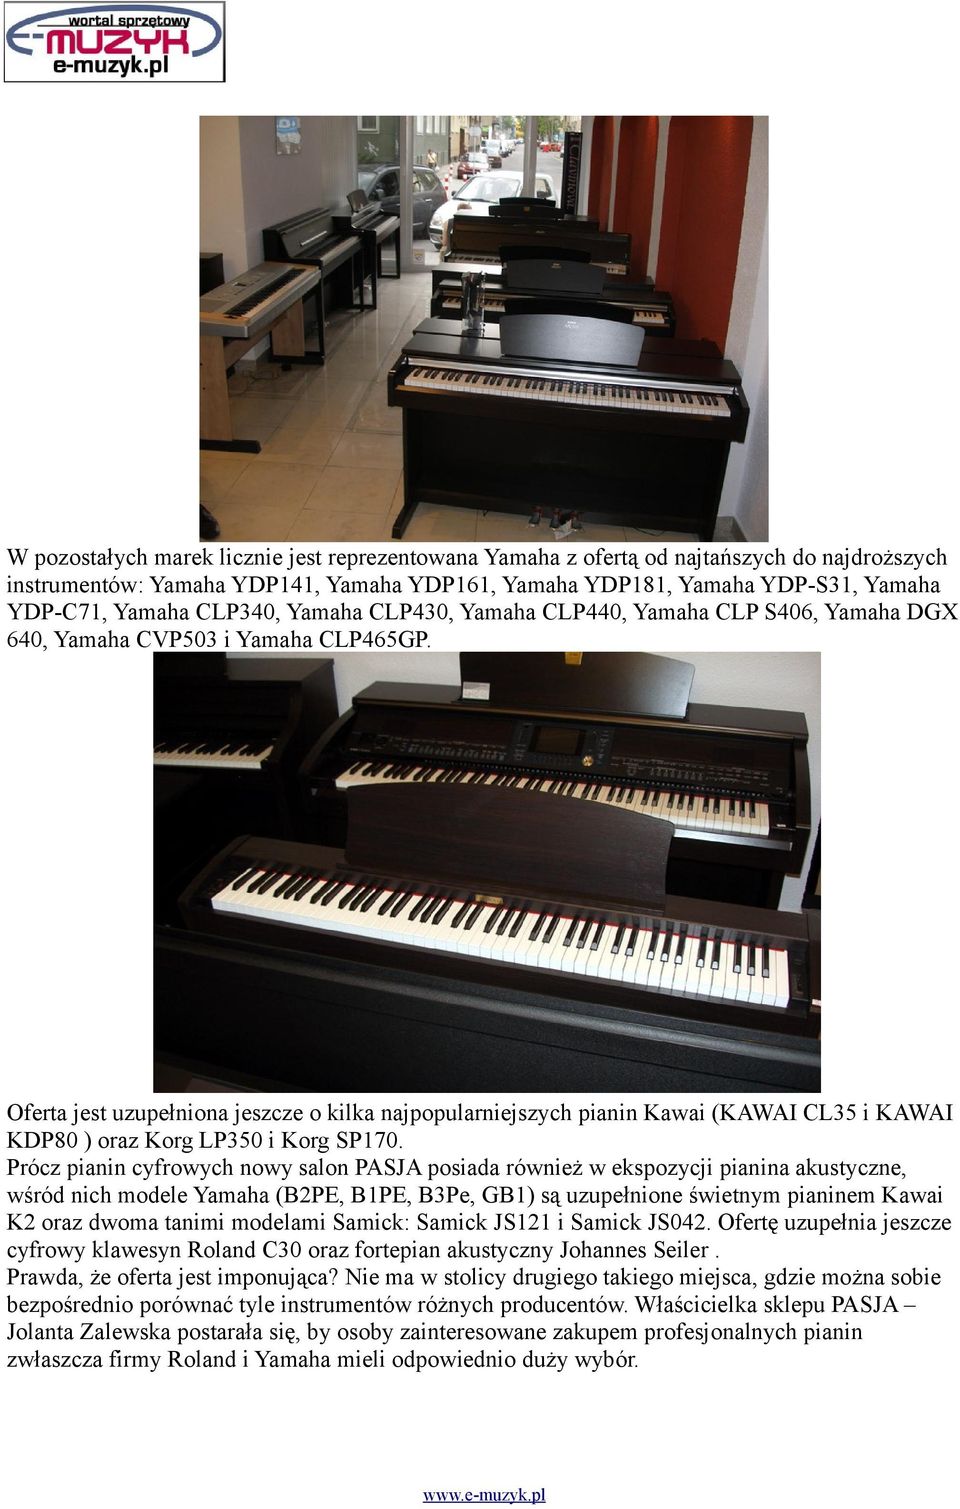 Oferta jest uzupełniona jeszcze o kilka najpopularniejszych pianin Kawai (KAWAI CL35 i KAWAI KDP80 ) oraz Korg LP350 i Korg SP170.